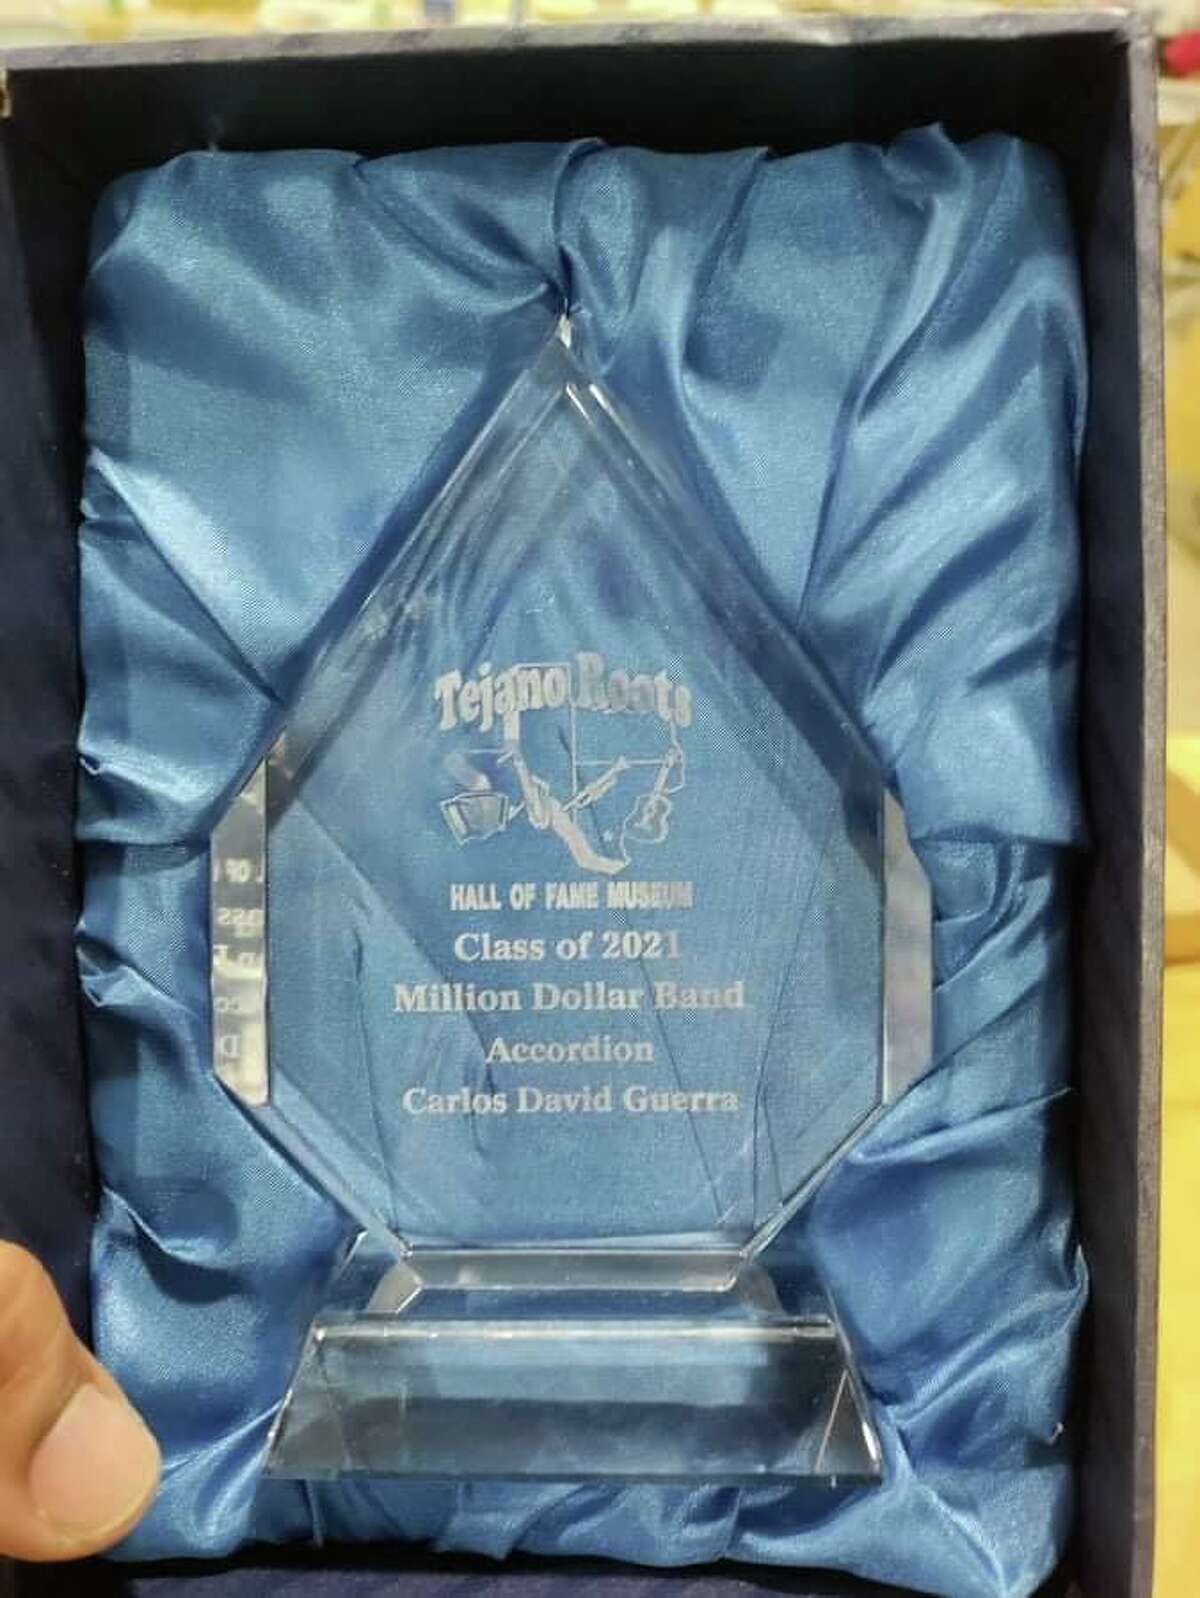 Una placa de cristal reconoce a Carlos David Guerra como miembro de Tejano Roots Hall of Fame Museum 2021 en la categoría de acordeonista.